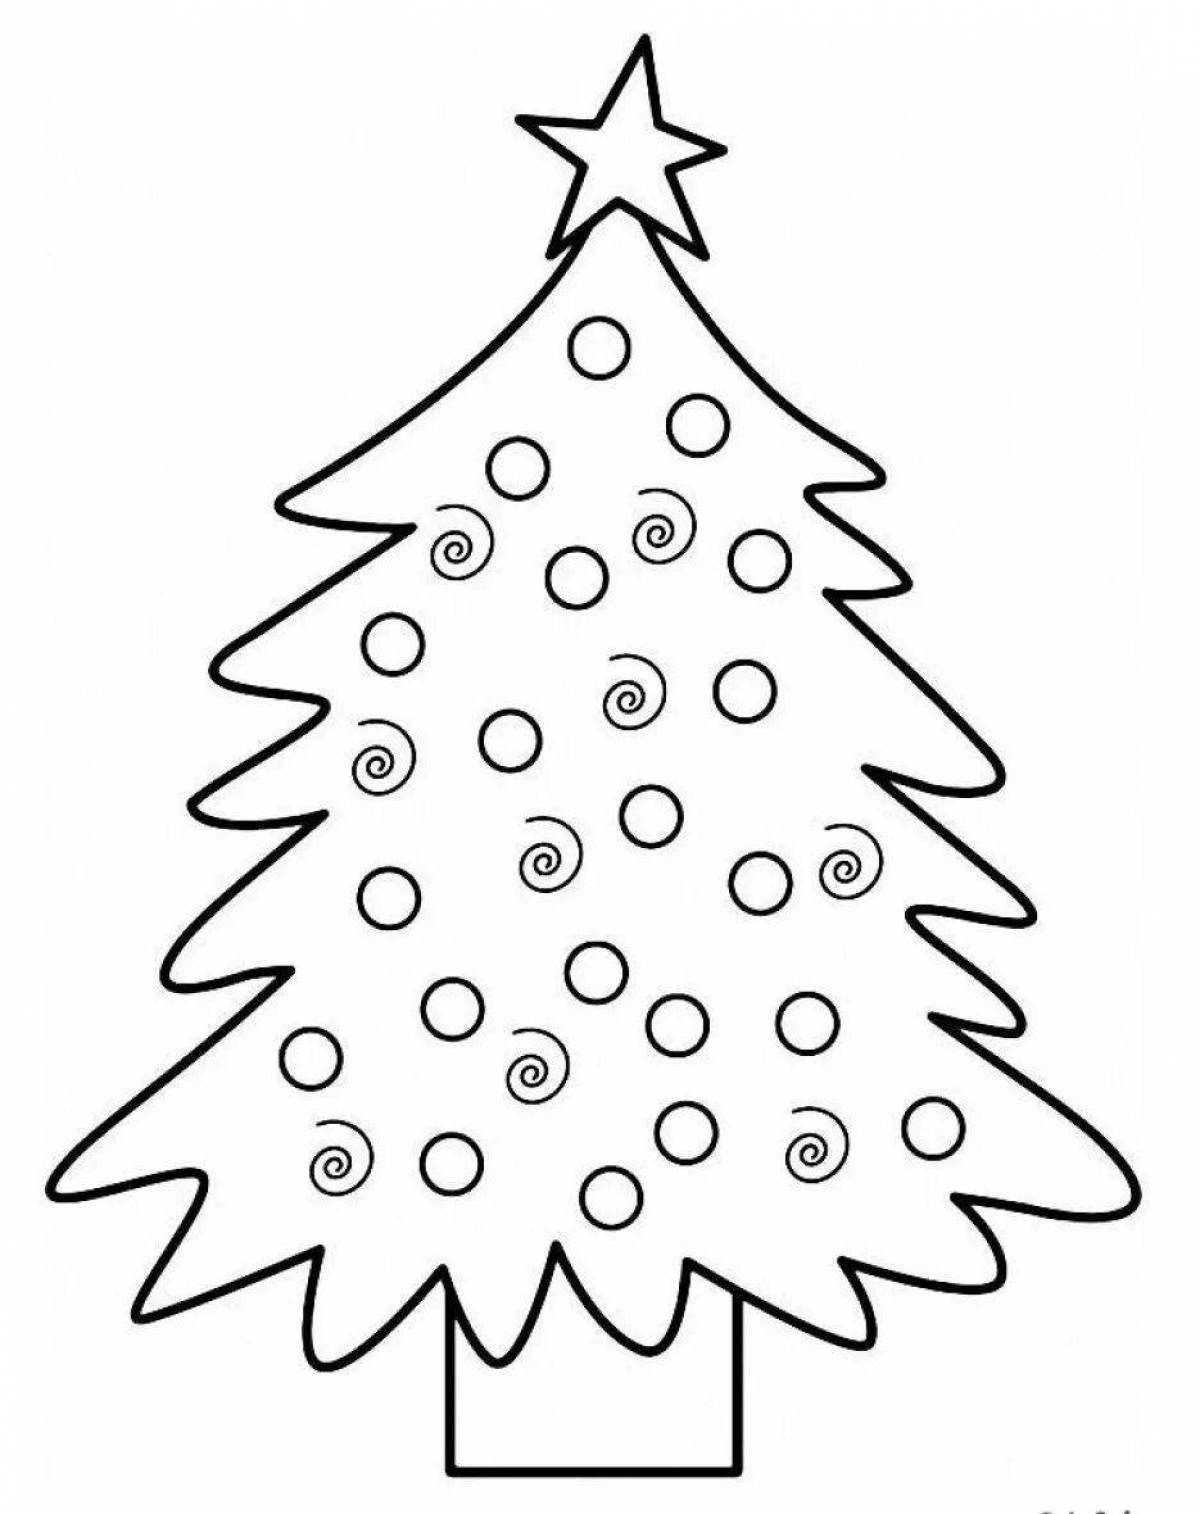 Великолепный рисунок рождественской елки для детей